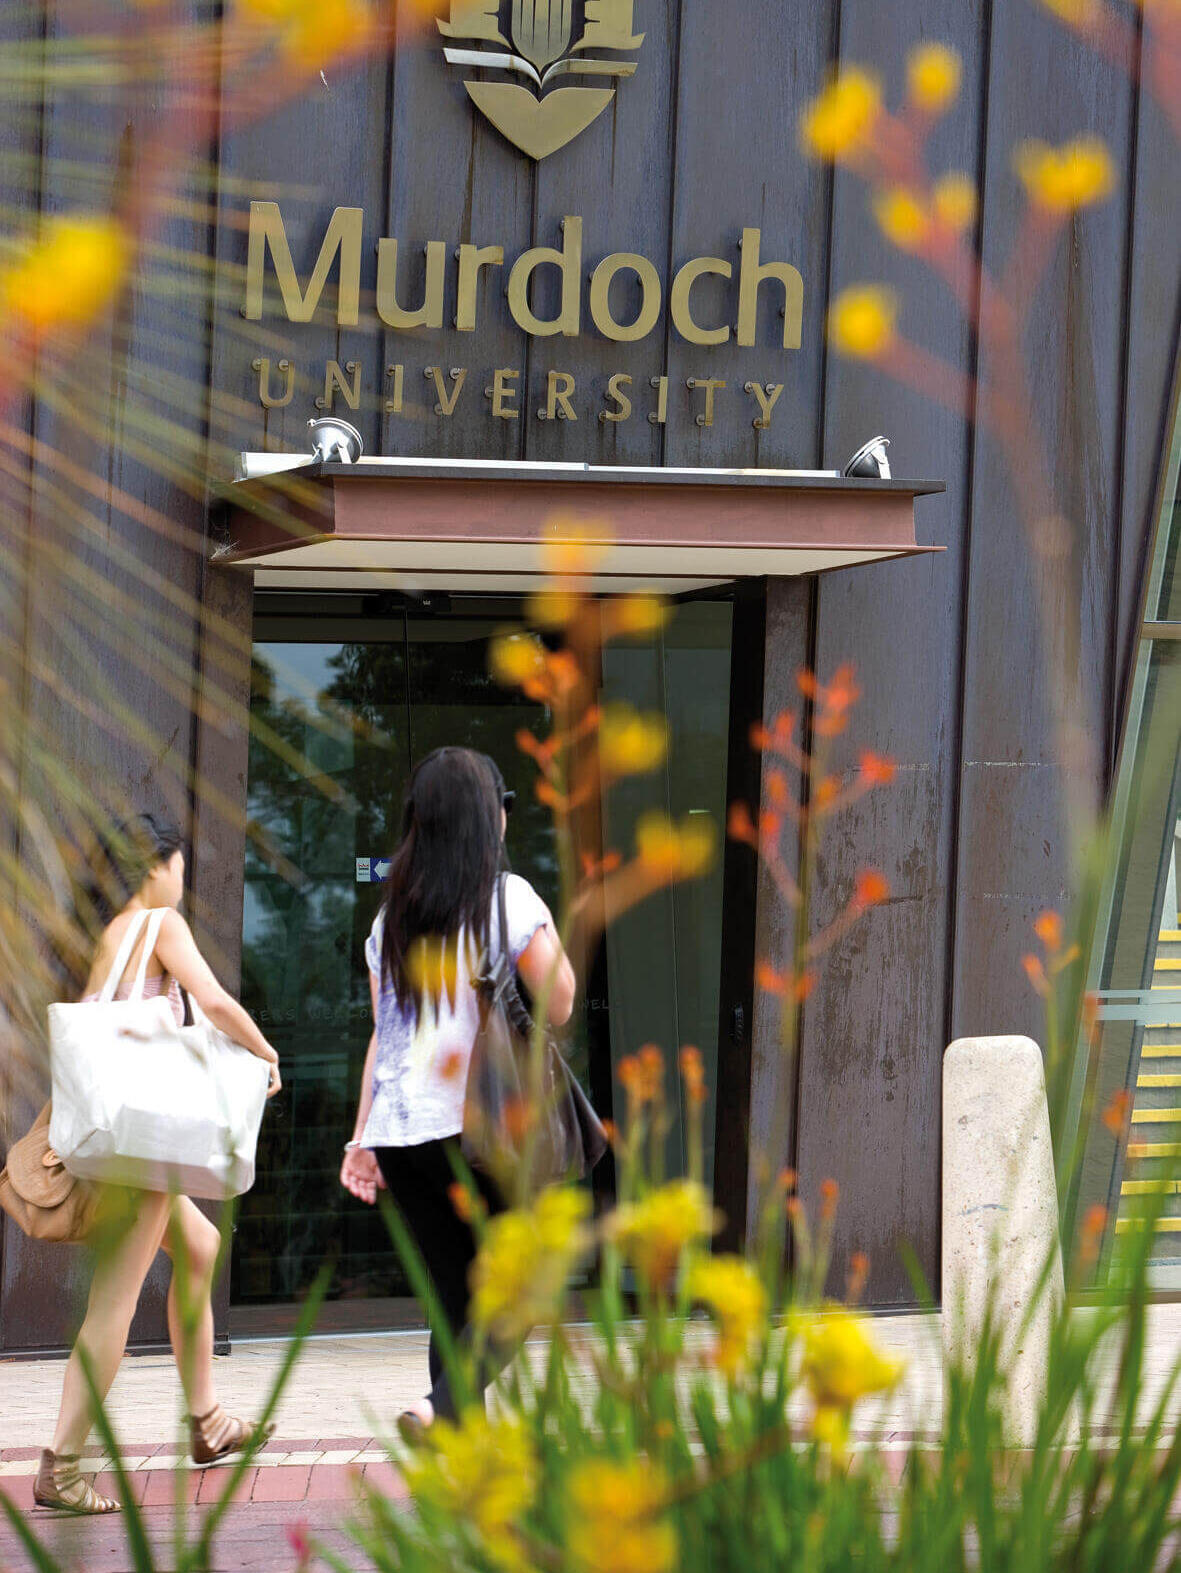 Murdoch University in Perth in Western Australia